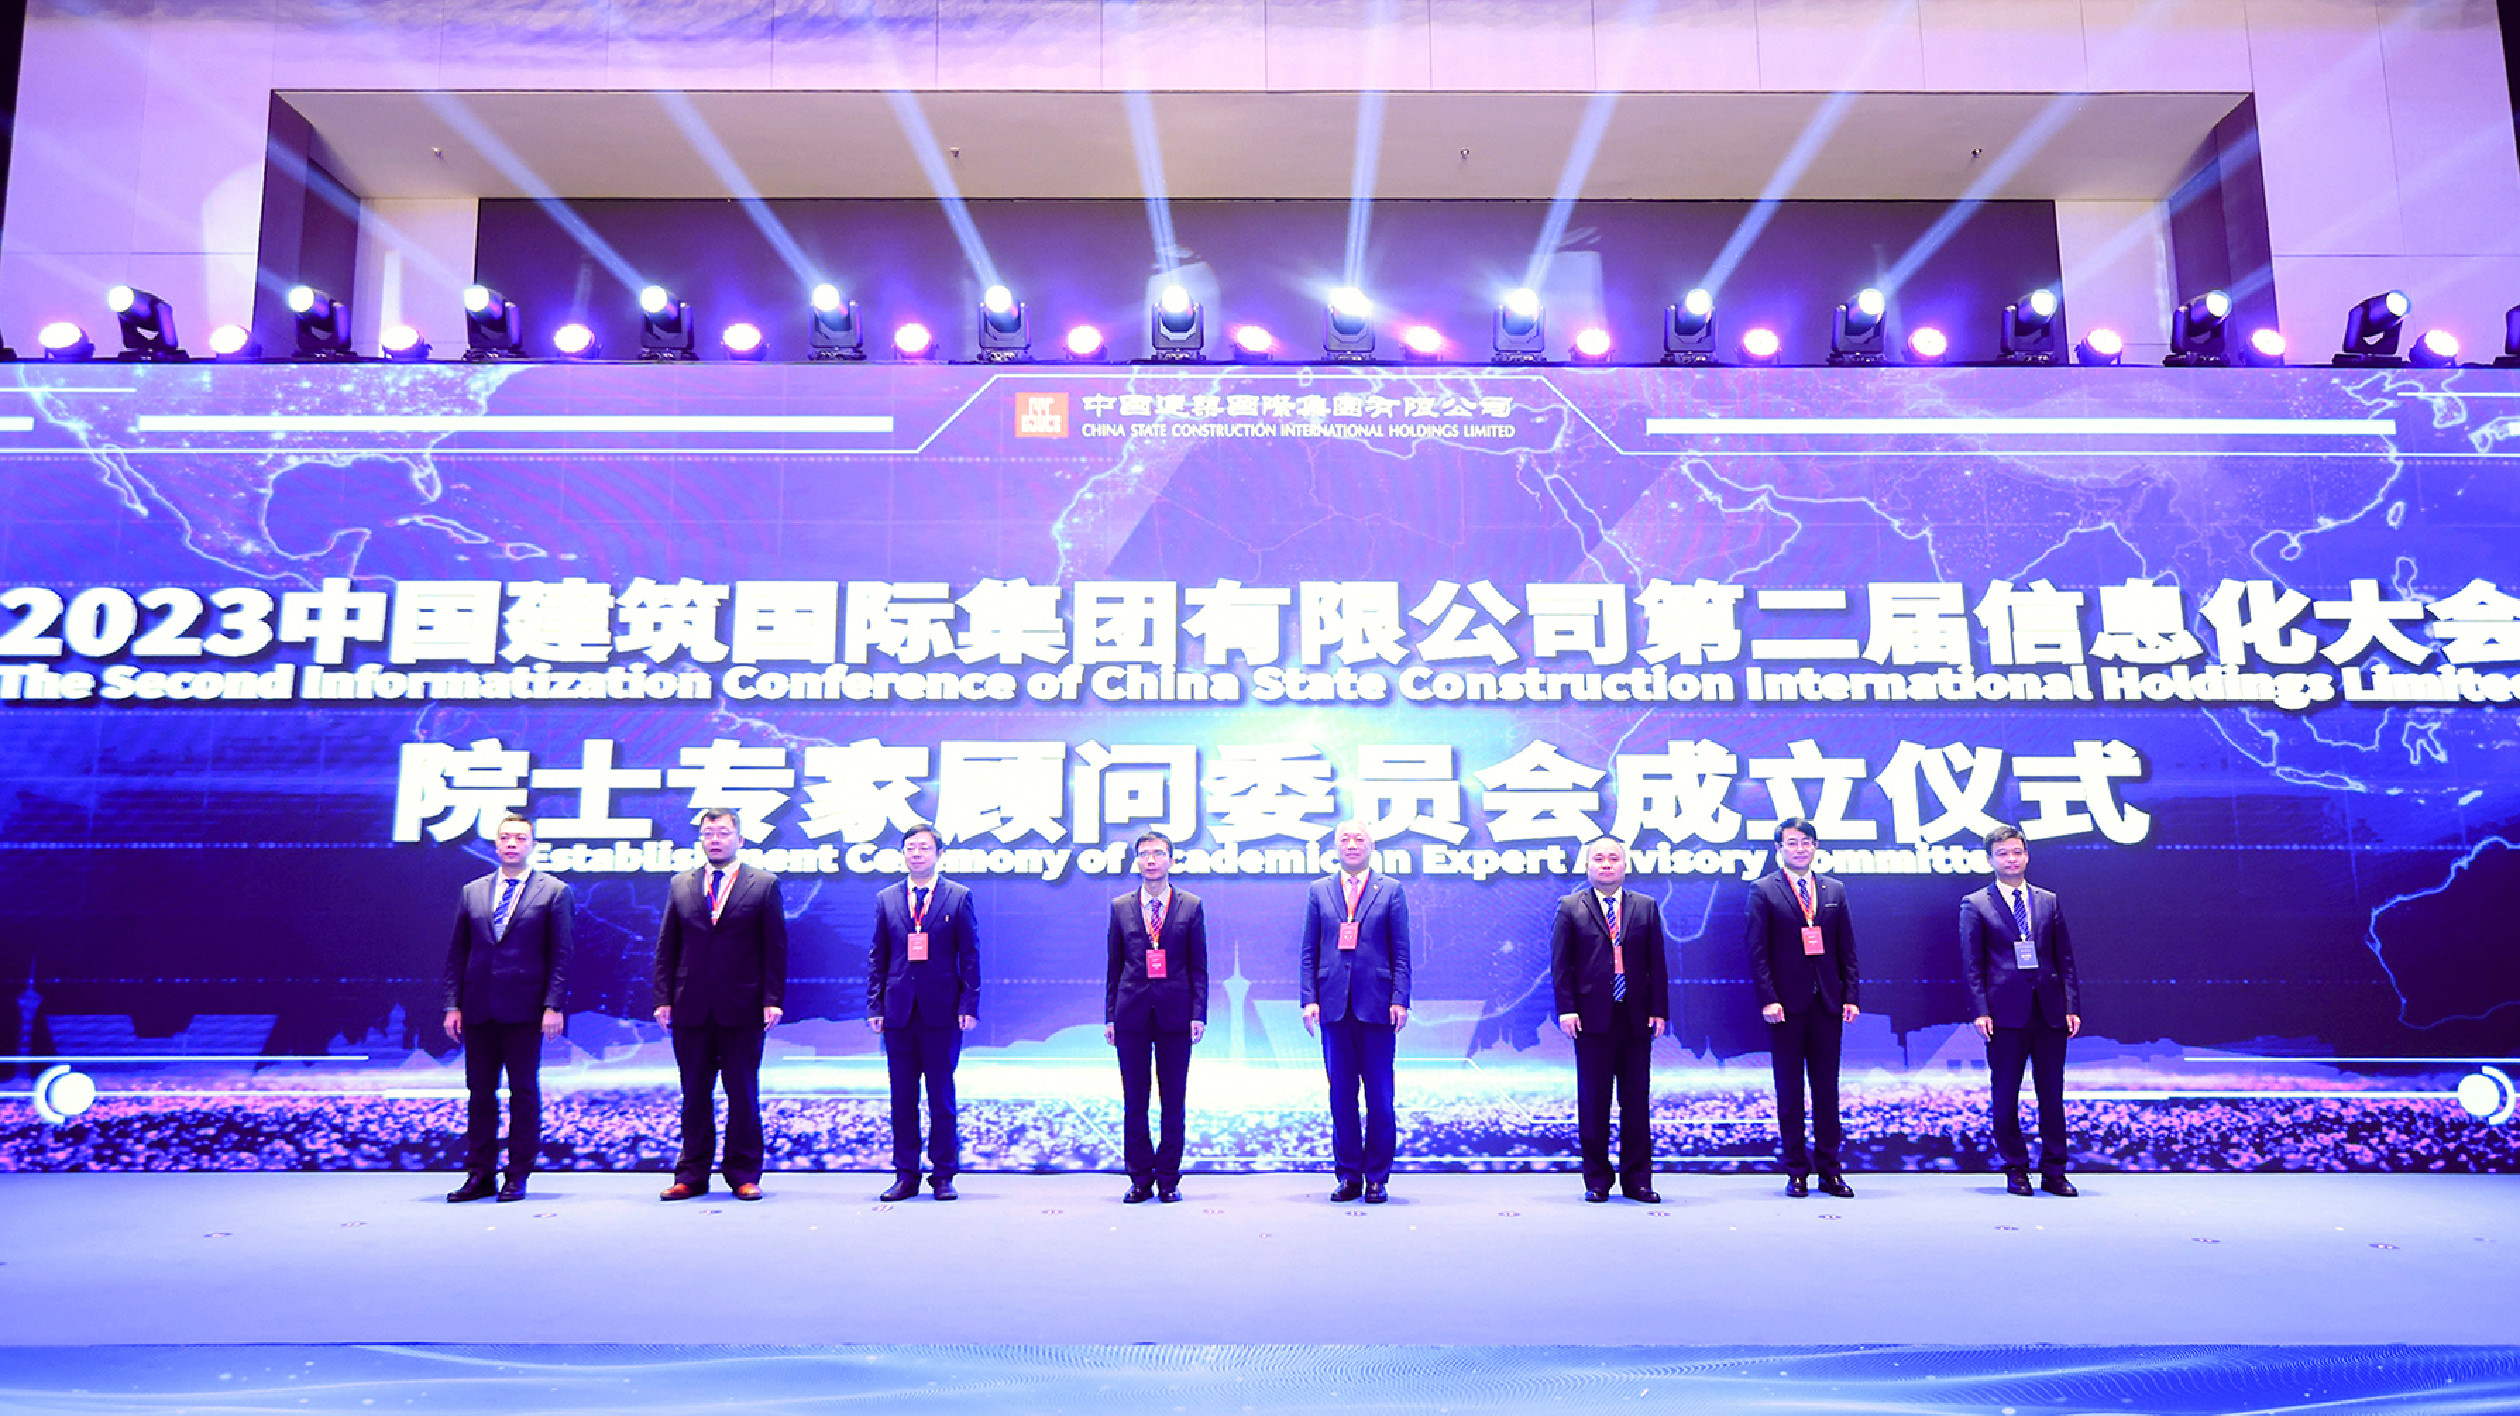 發展智慧之路！中國建築國際院士專家顧問委員會成立儀式在珠海舉行